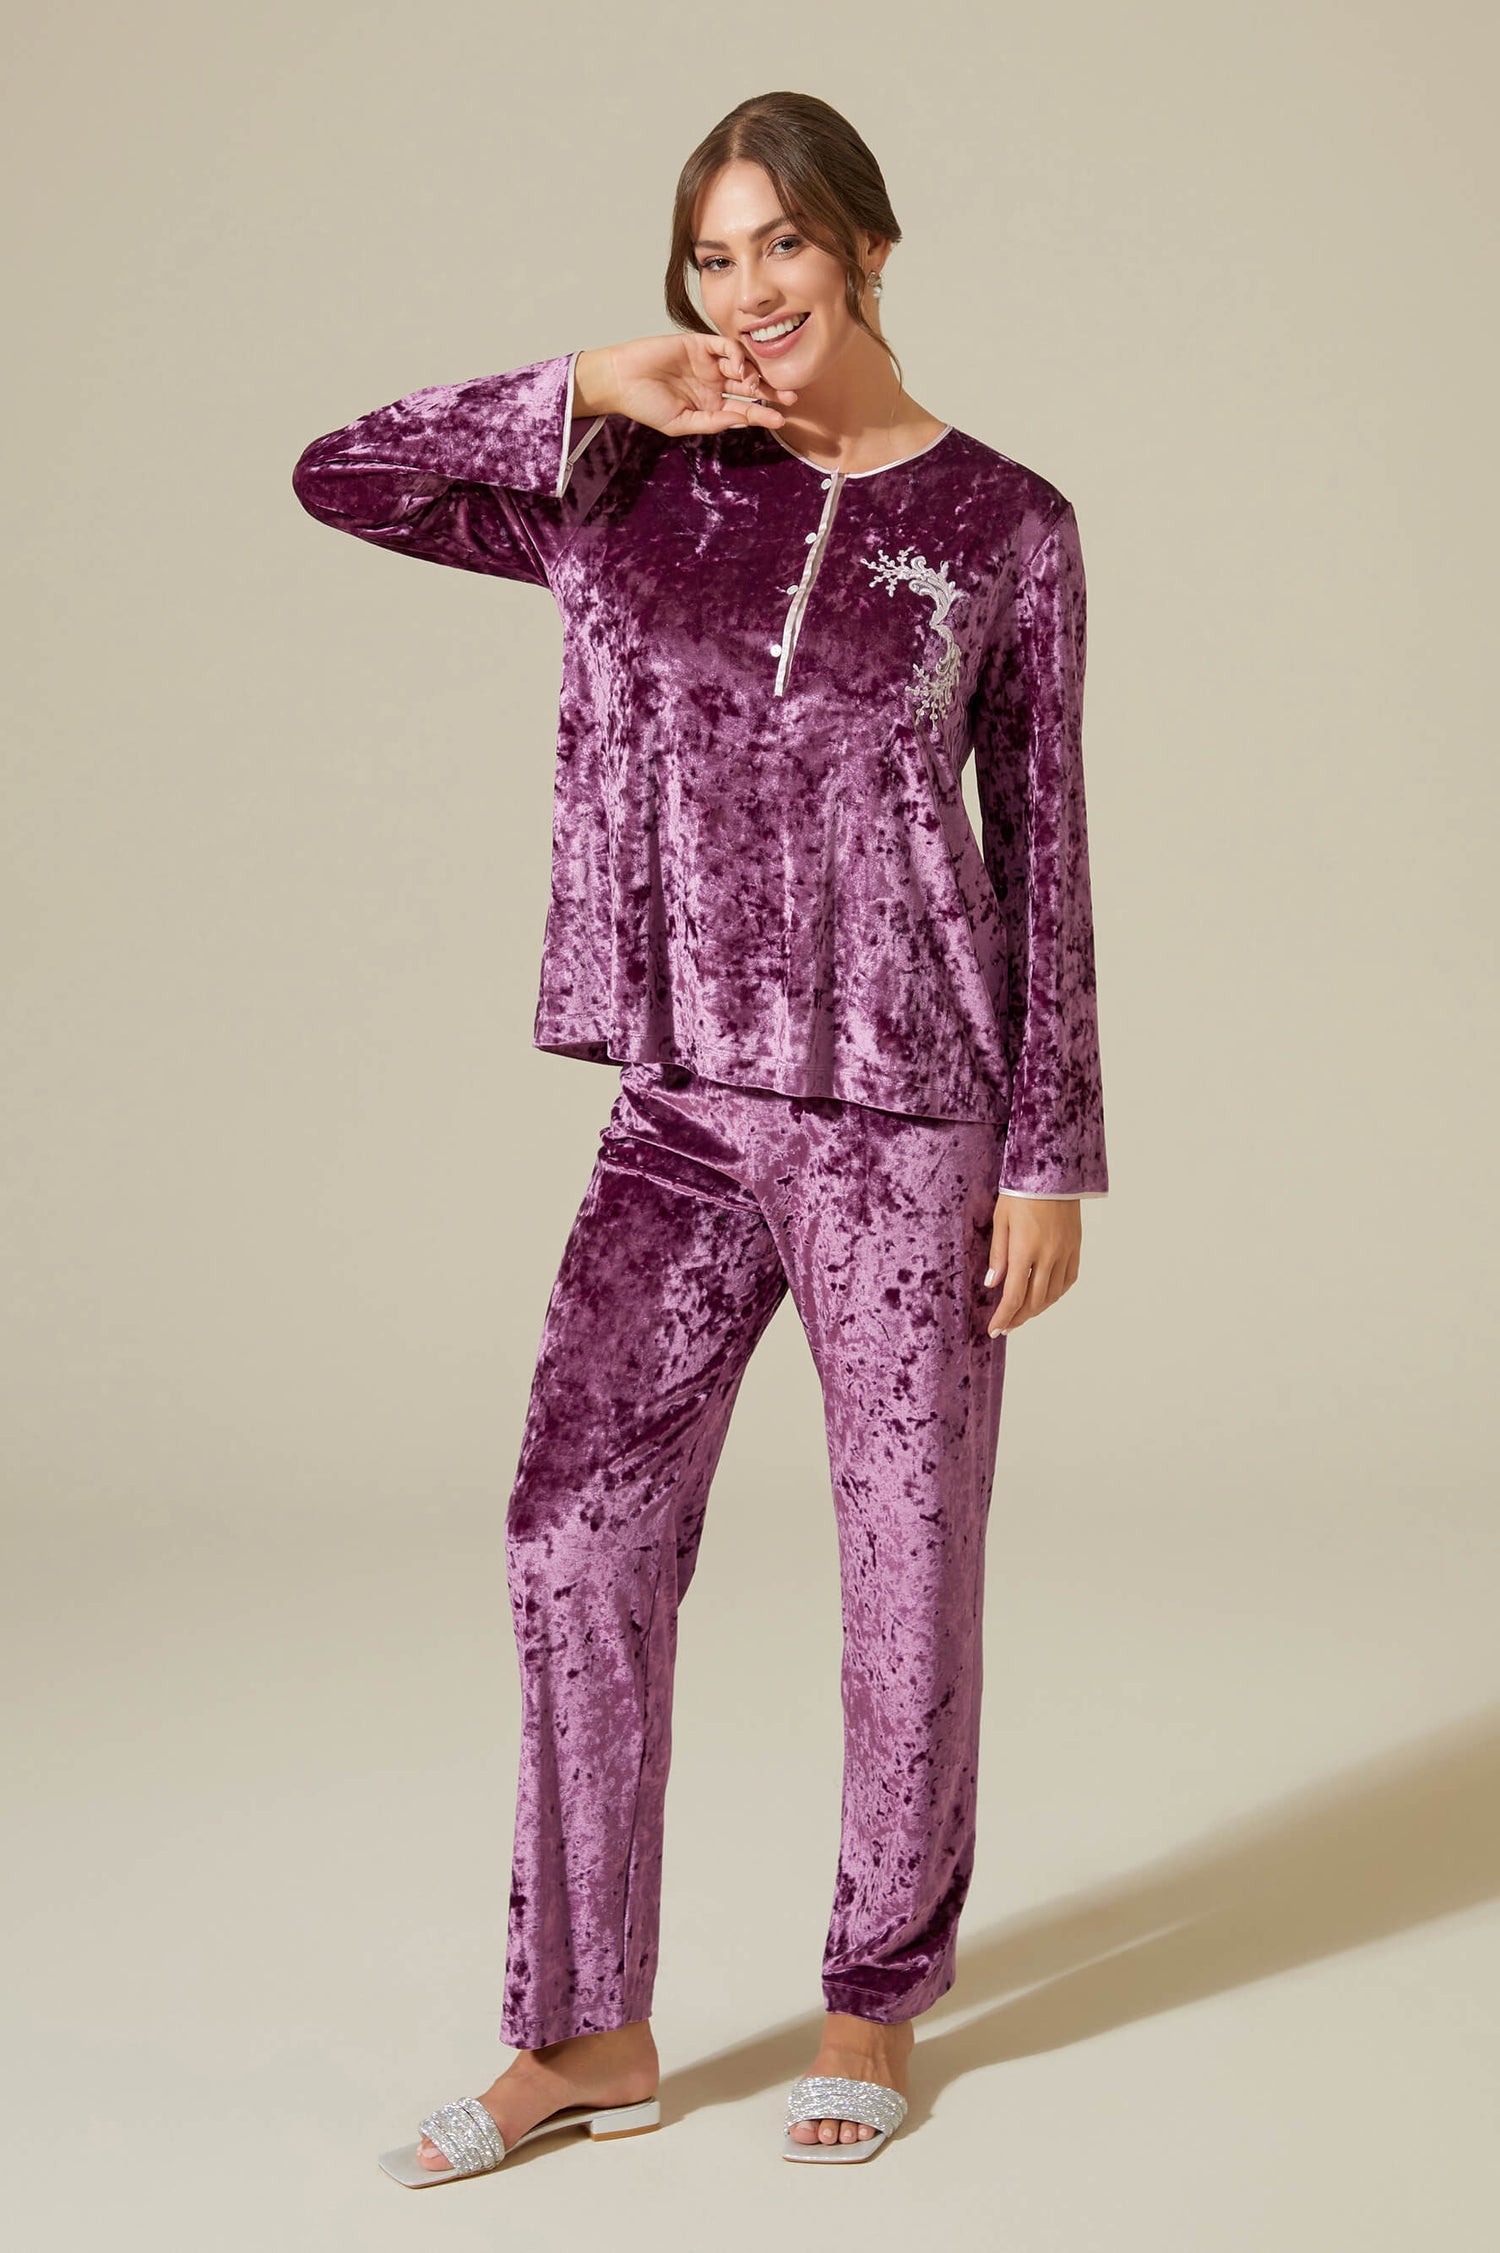 Latifa Trimmed and Buttoned Velvet PJ Set - Powder on Plum